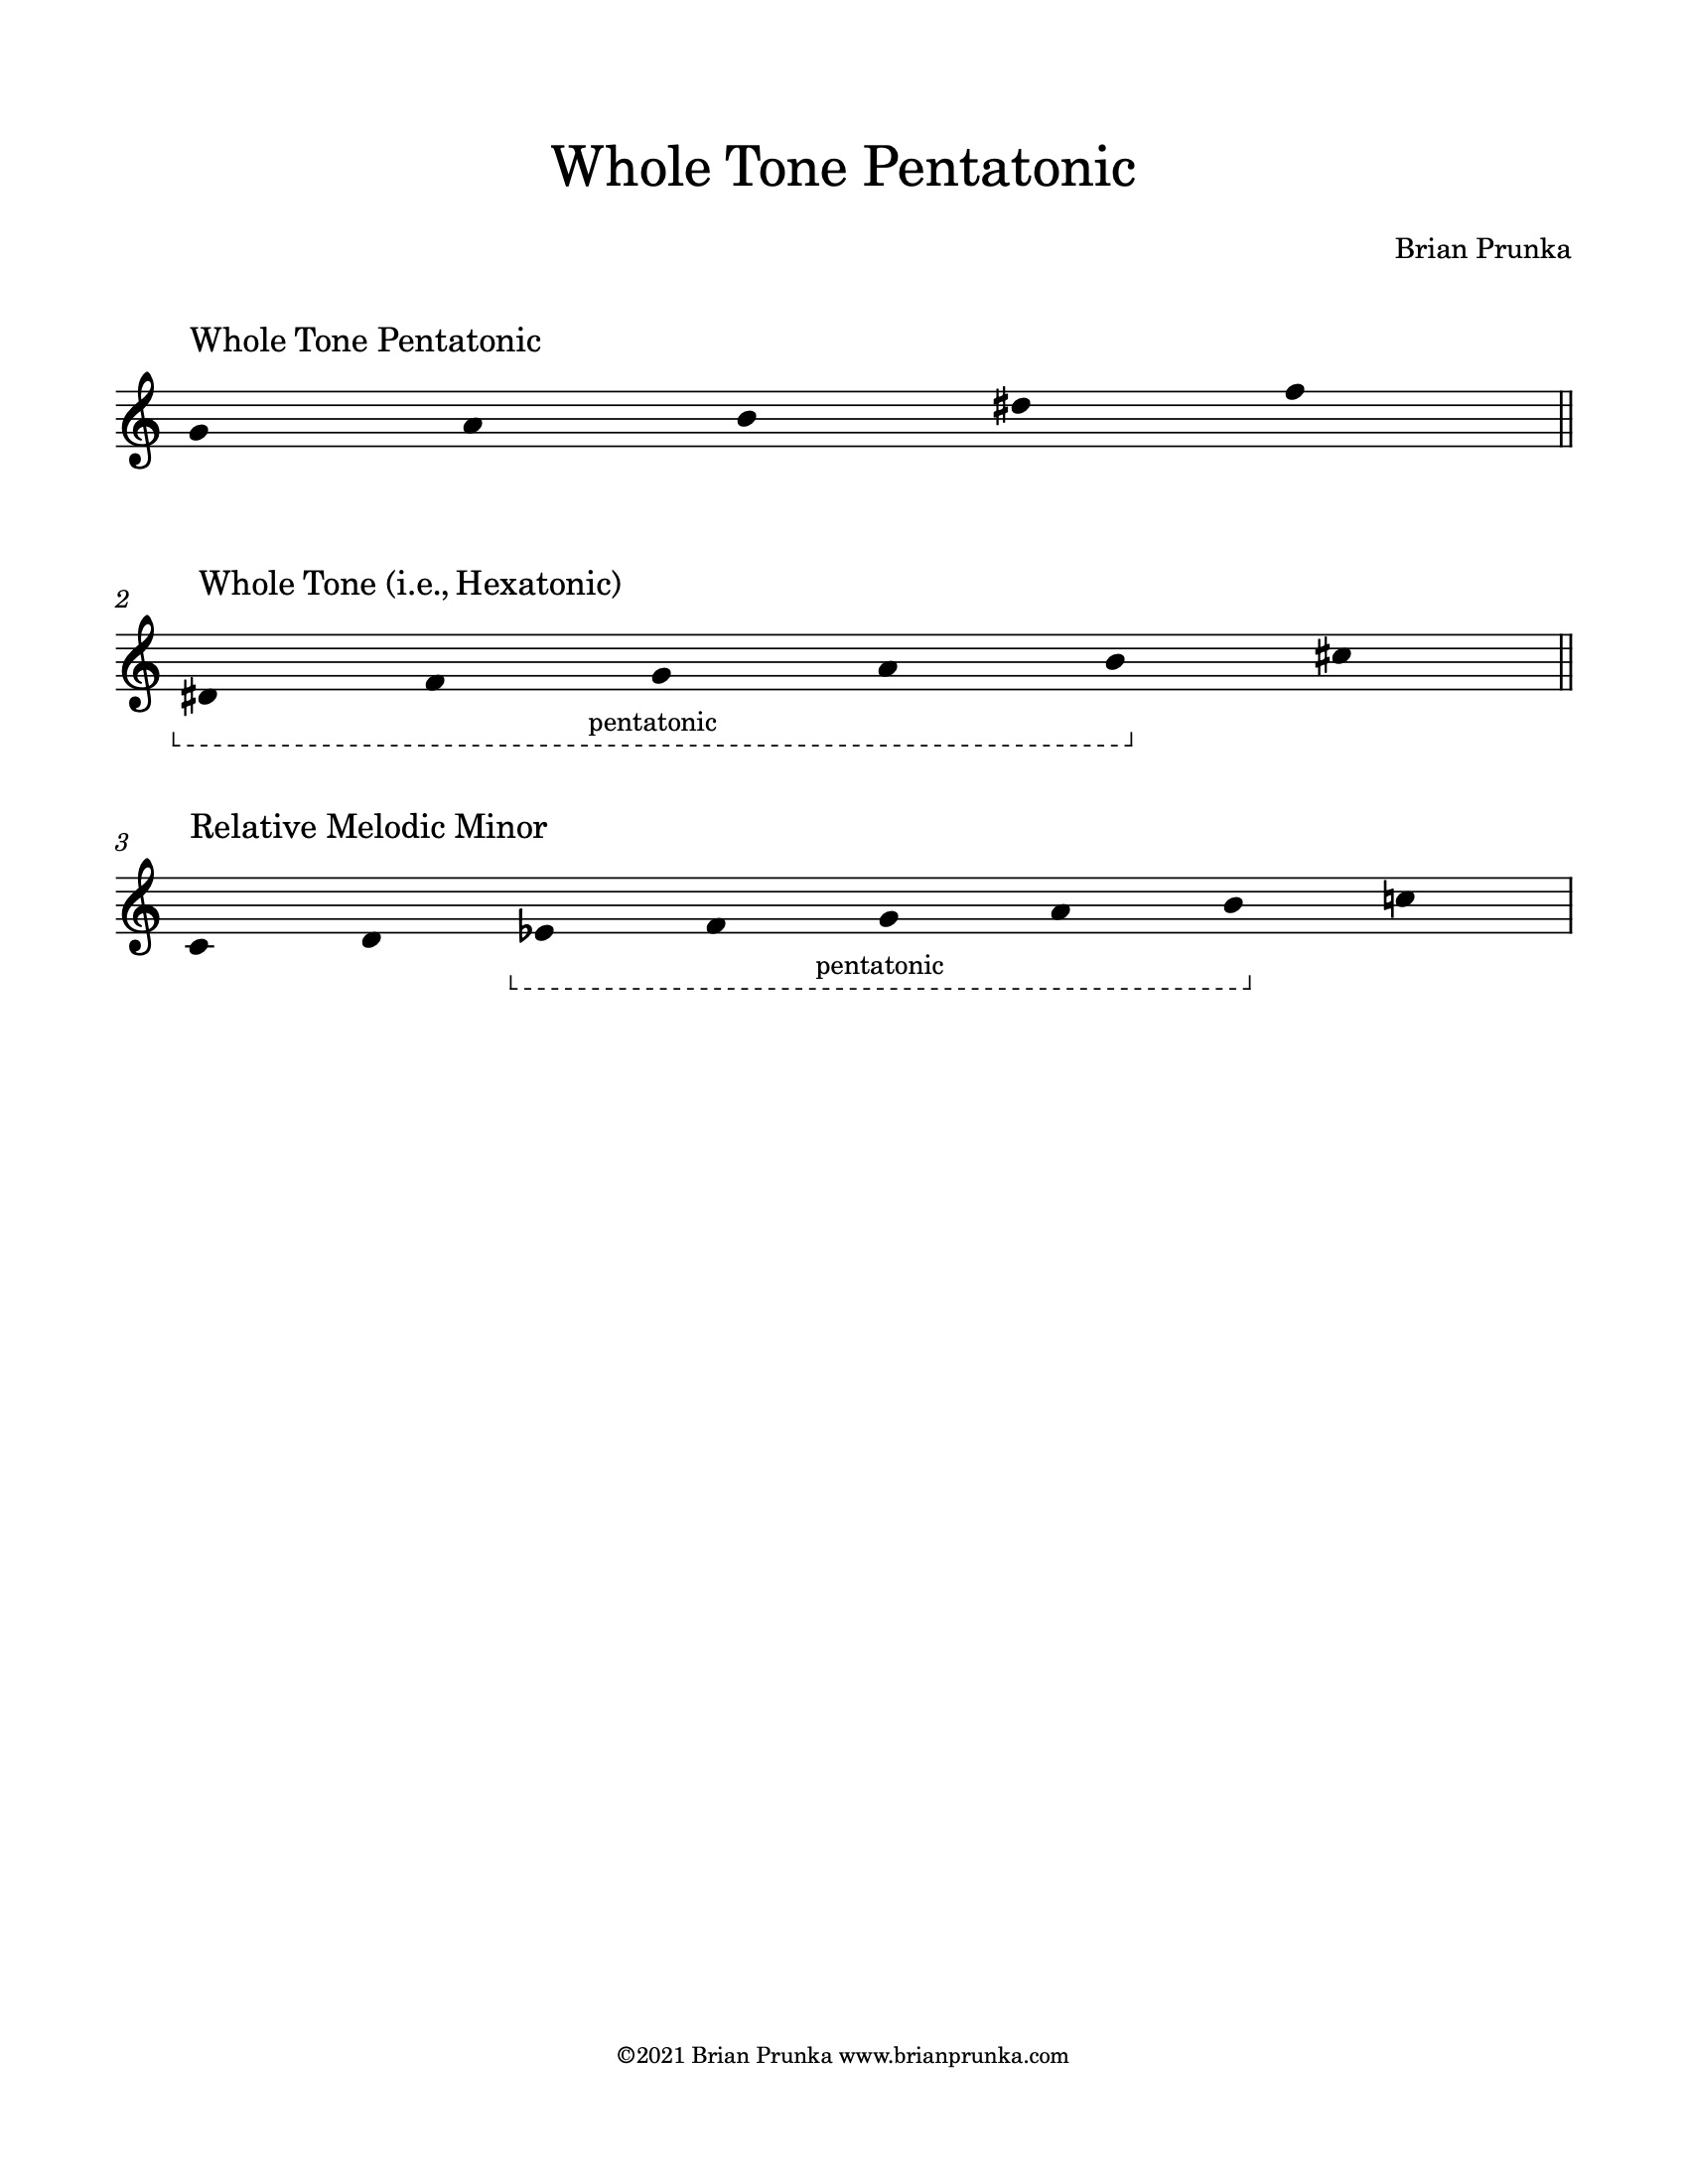 Whole Tone - Pentatonic vs Melodic Minor